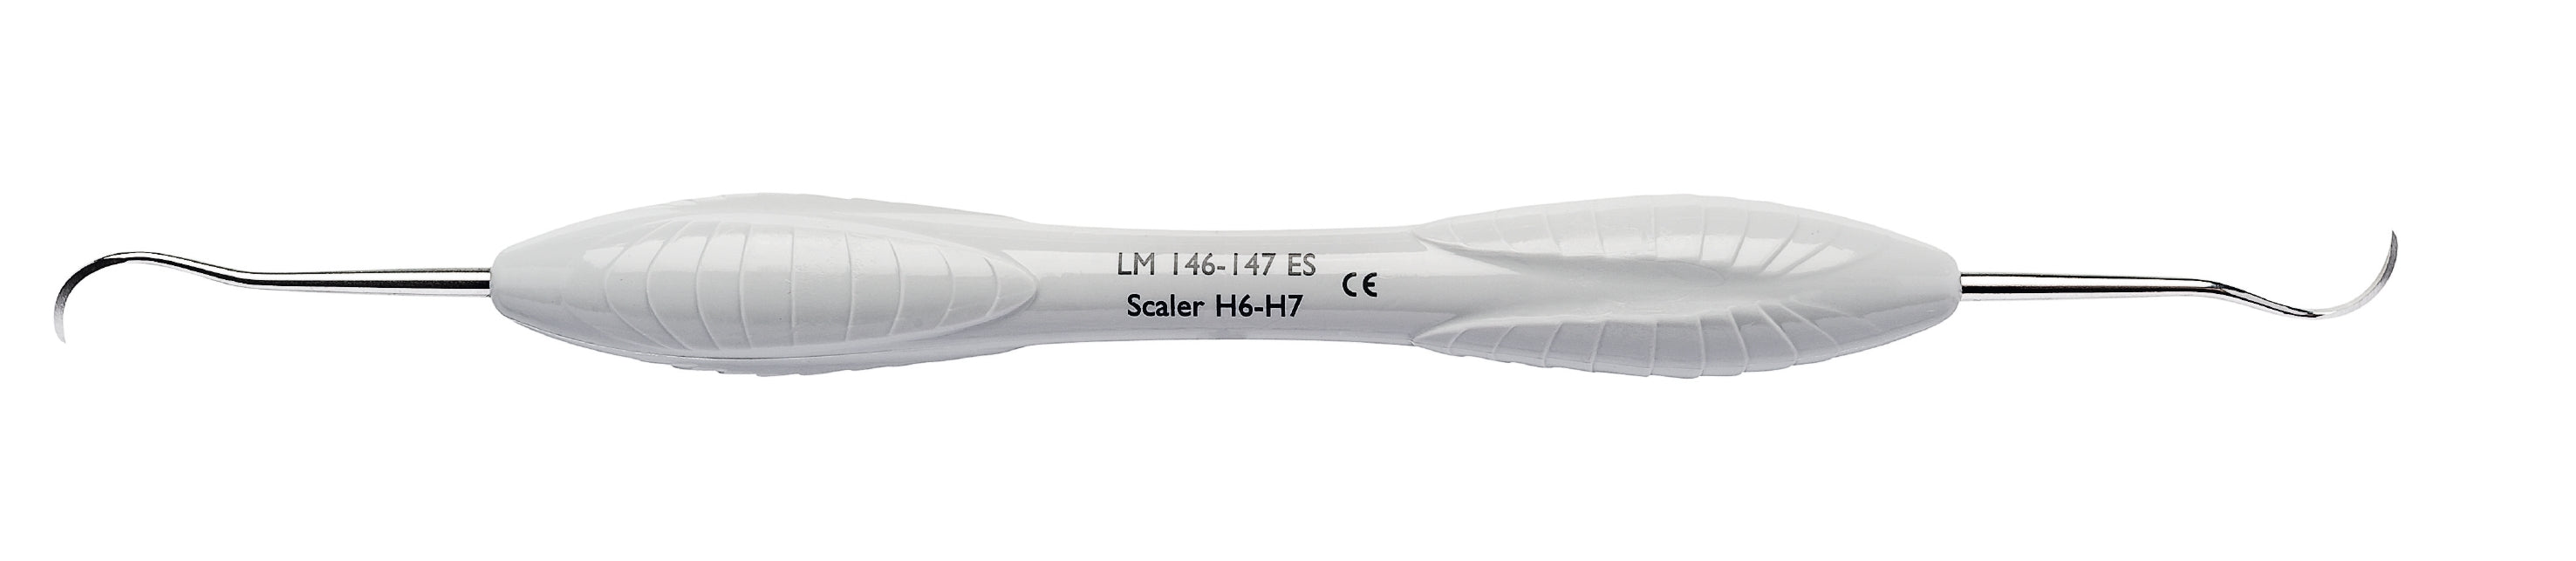 LM 146-147ES Scaler H6-H7, Anterior ES